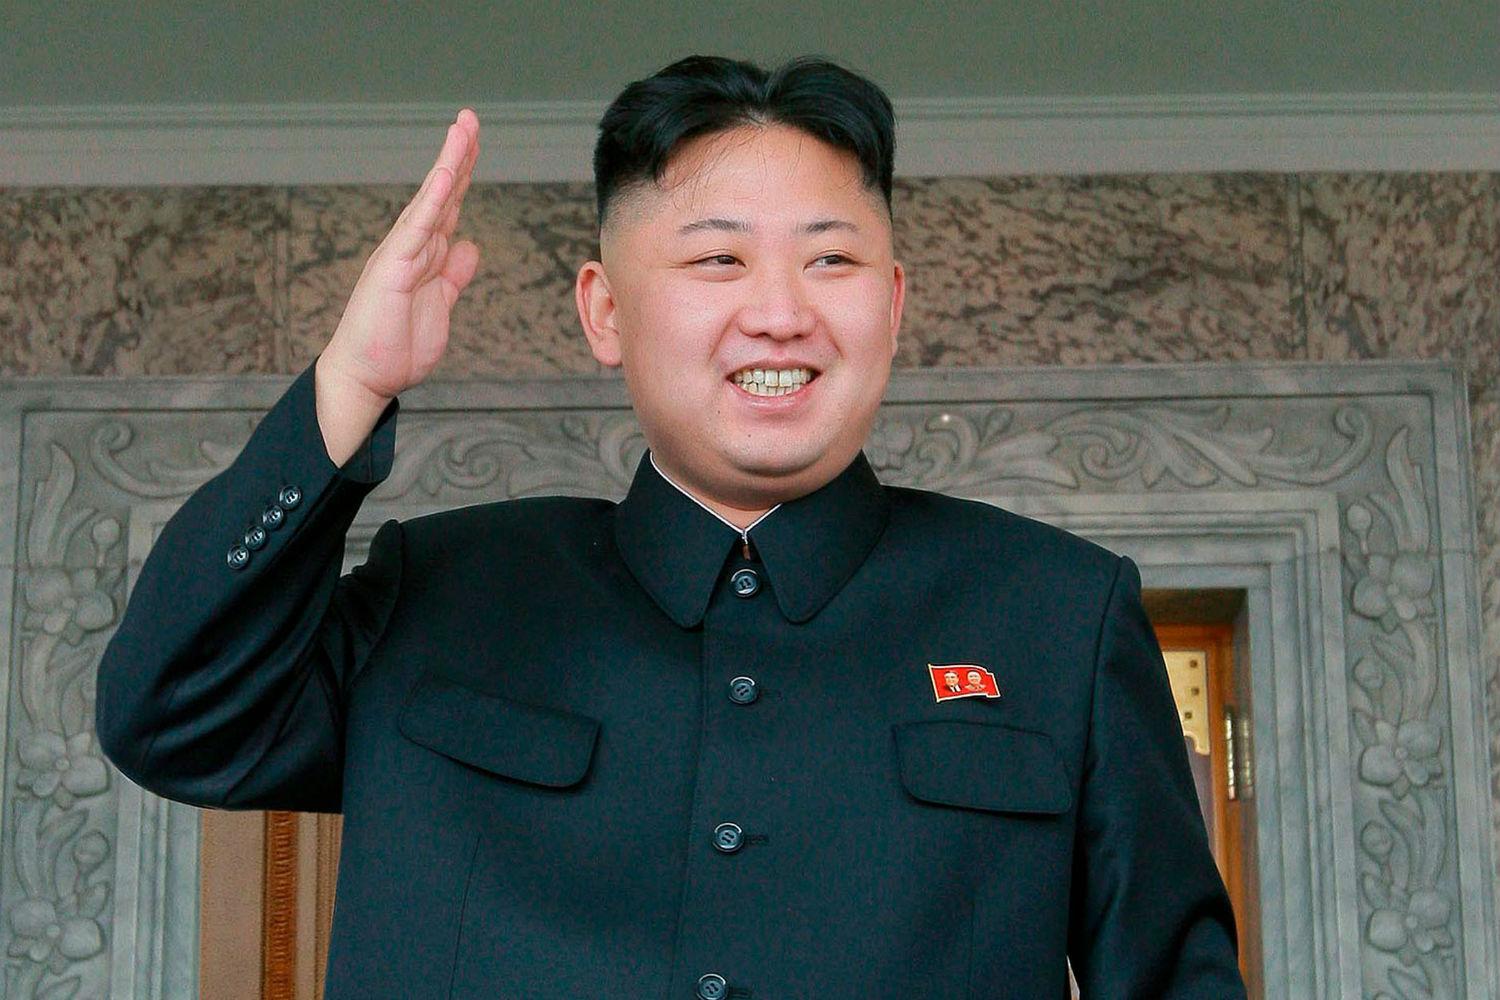 Hombres de Corea del Norte deberán cortarse el cabello como Kim Jong-un